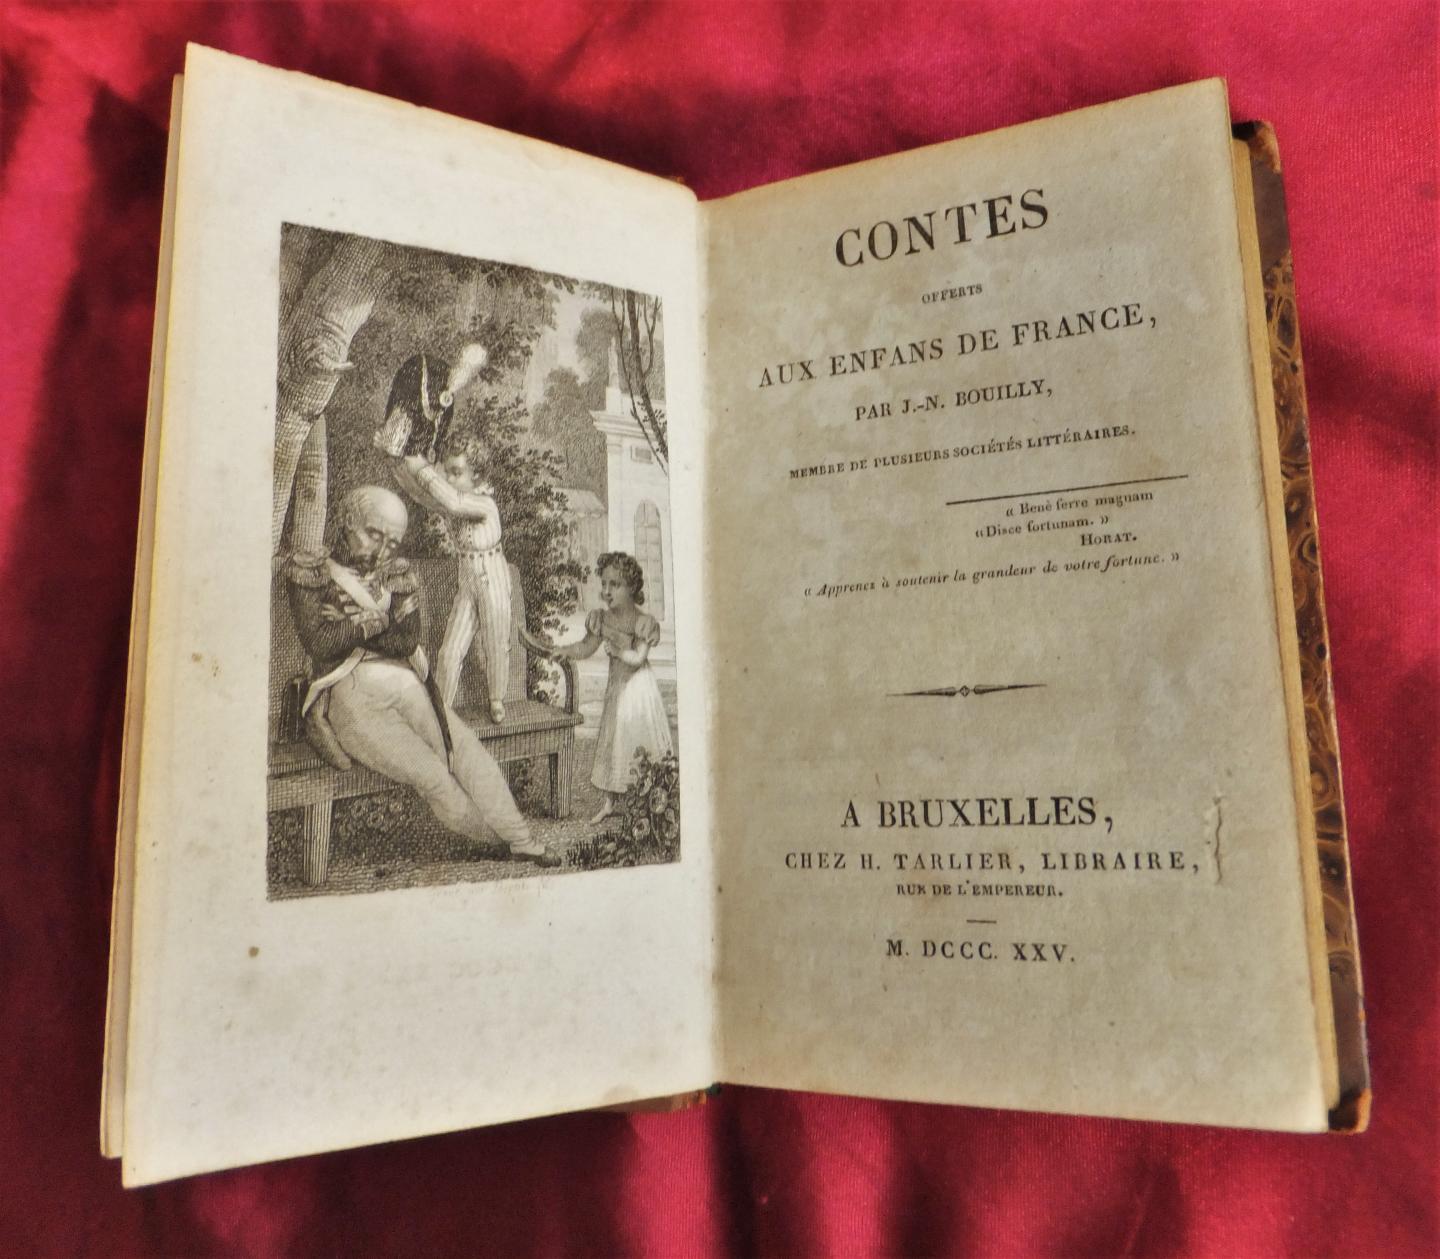 Bouilly, J.-N. - Contes offerts aux enfans de France